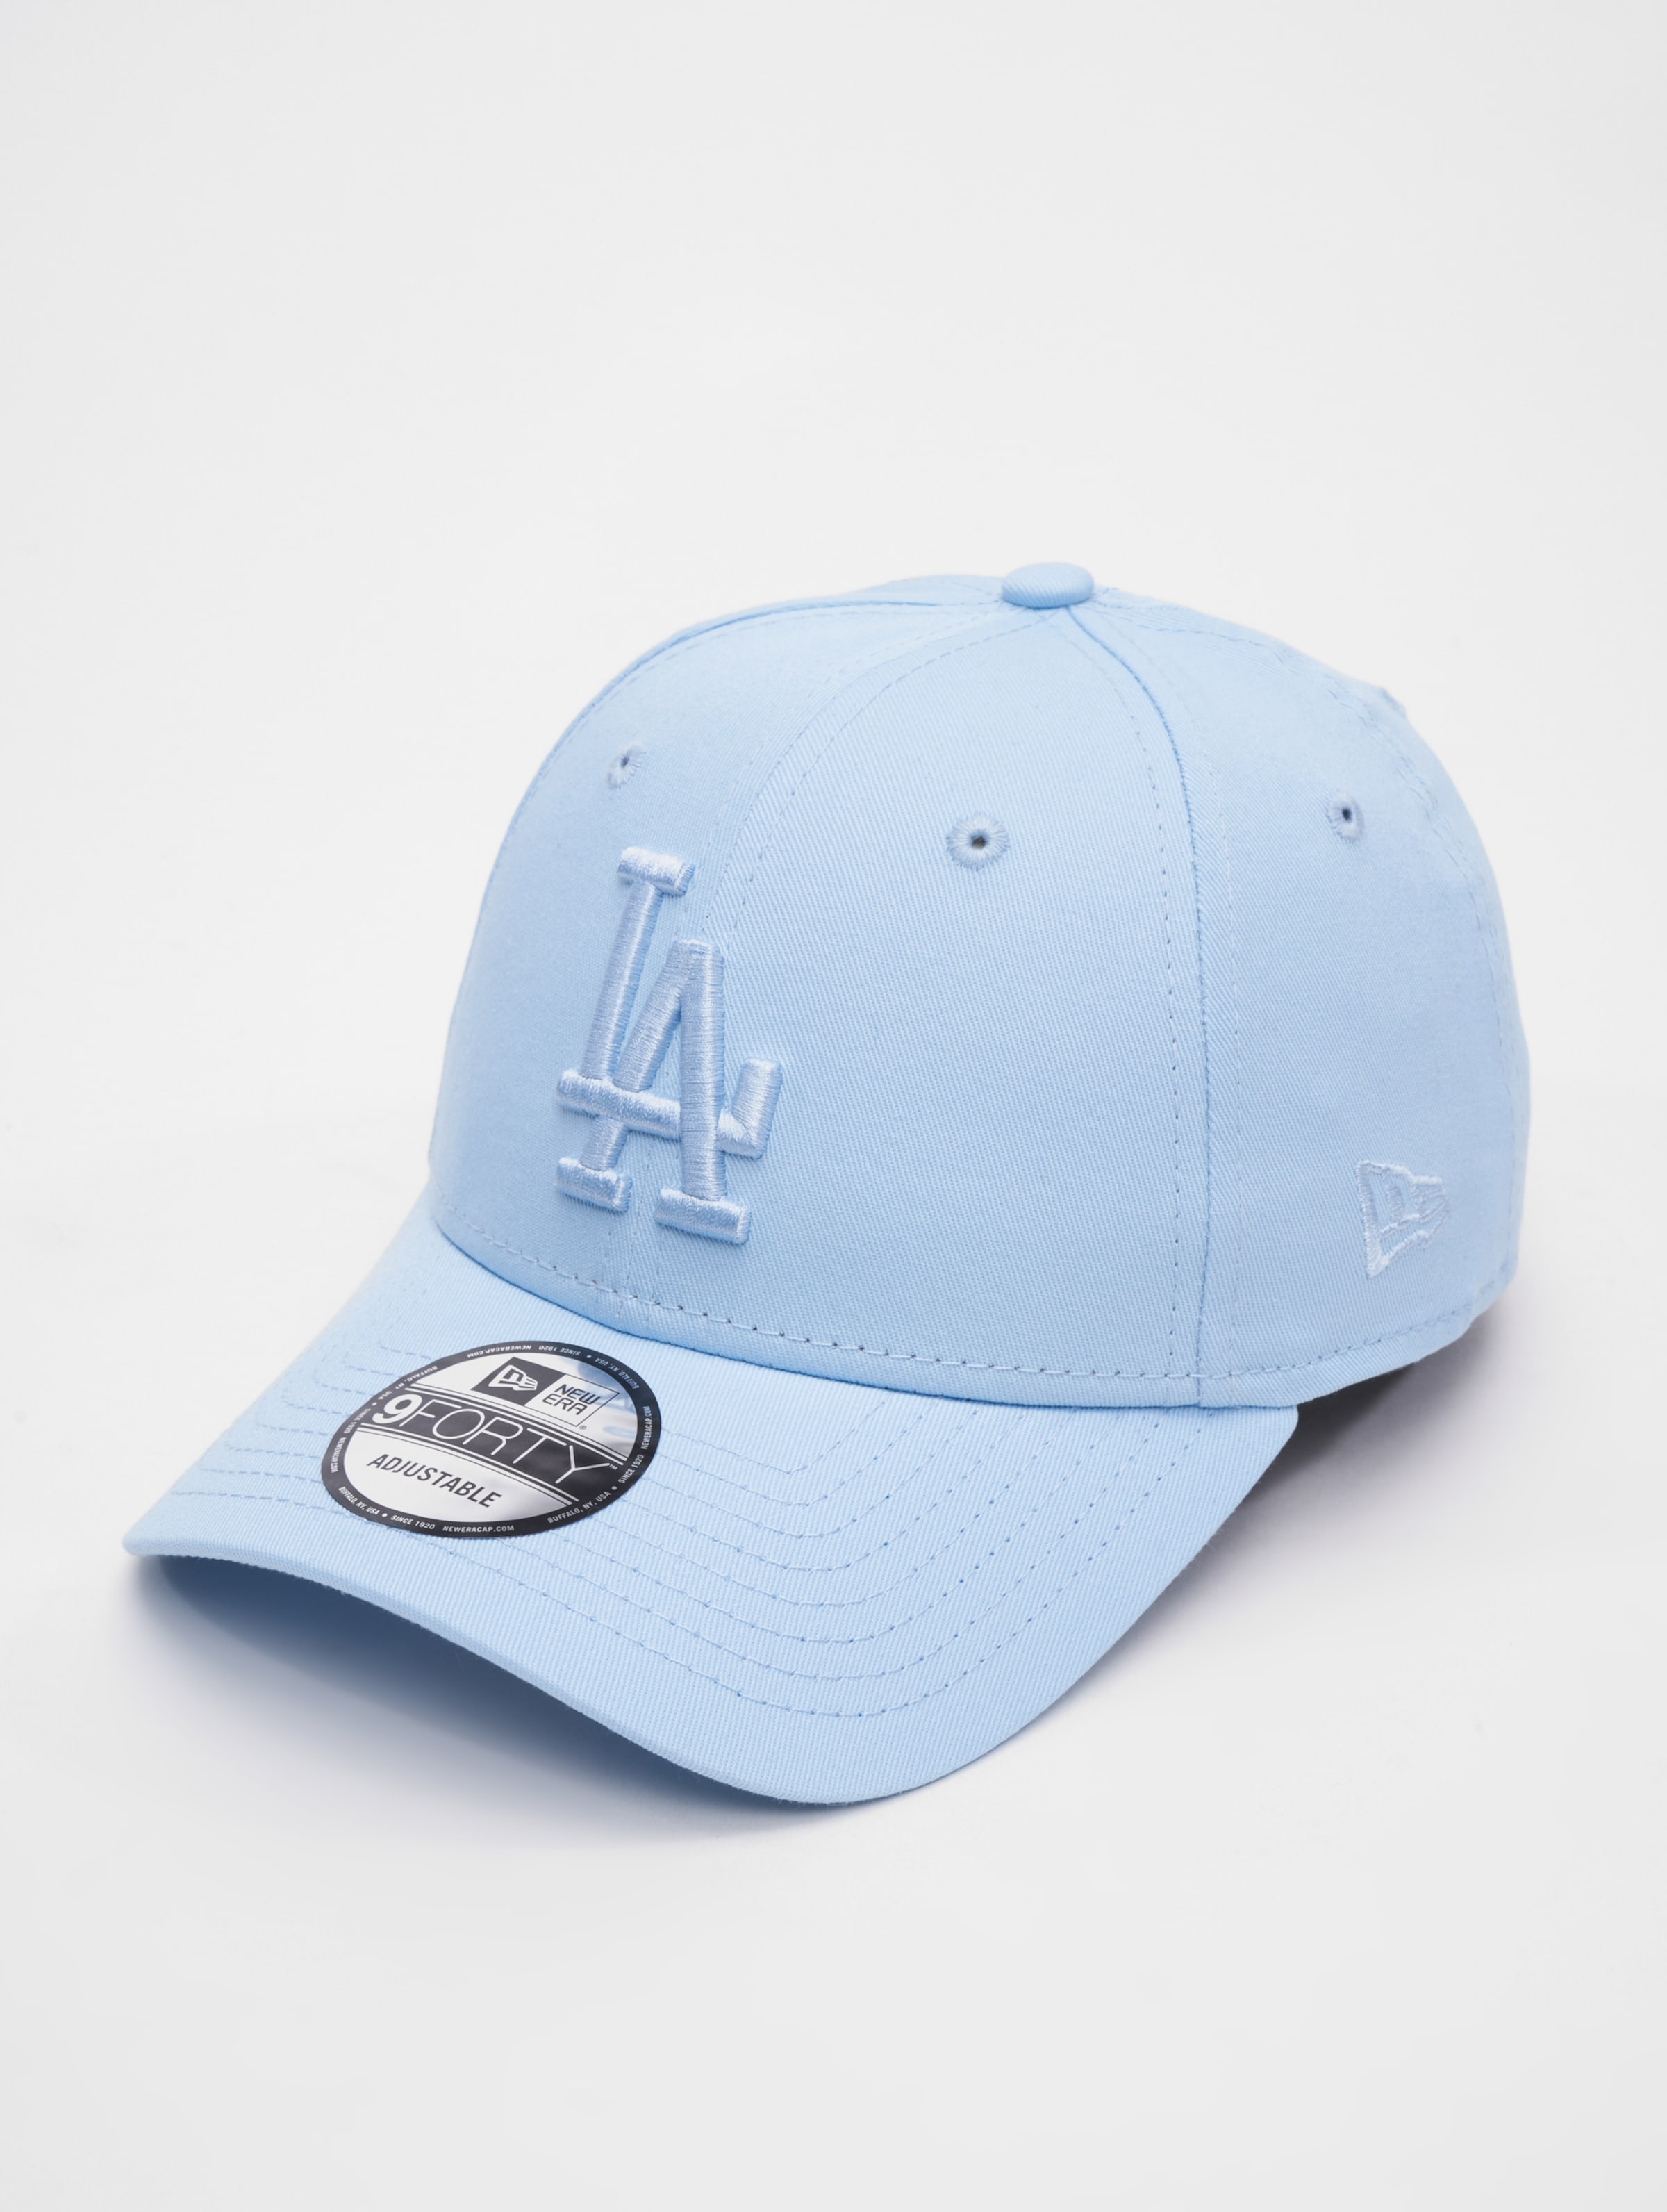 New Era - LA Dodgers League Essential Pastel Blue 9FORTY Adjustable Cap